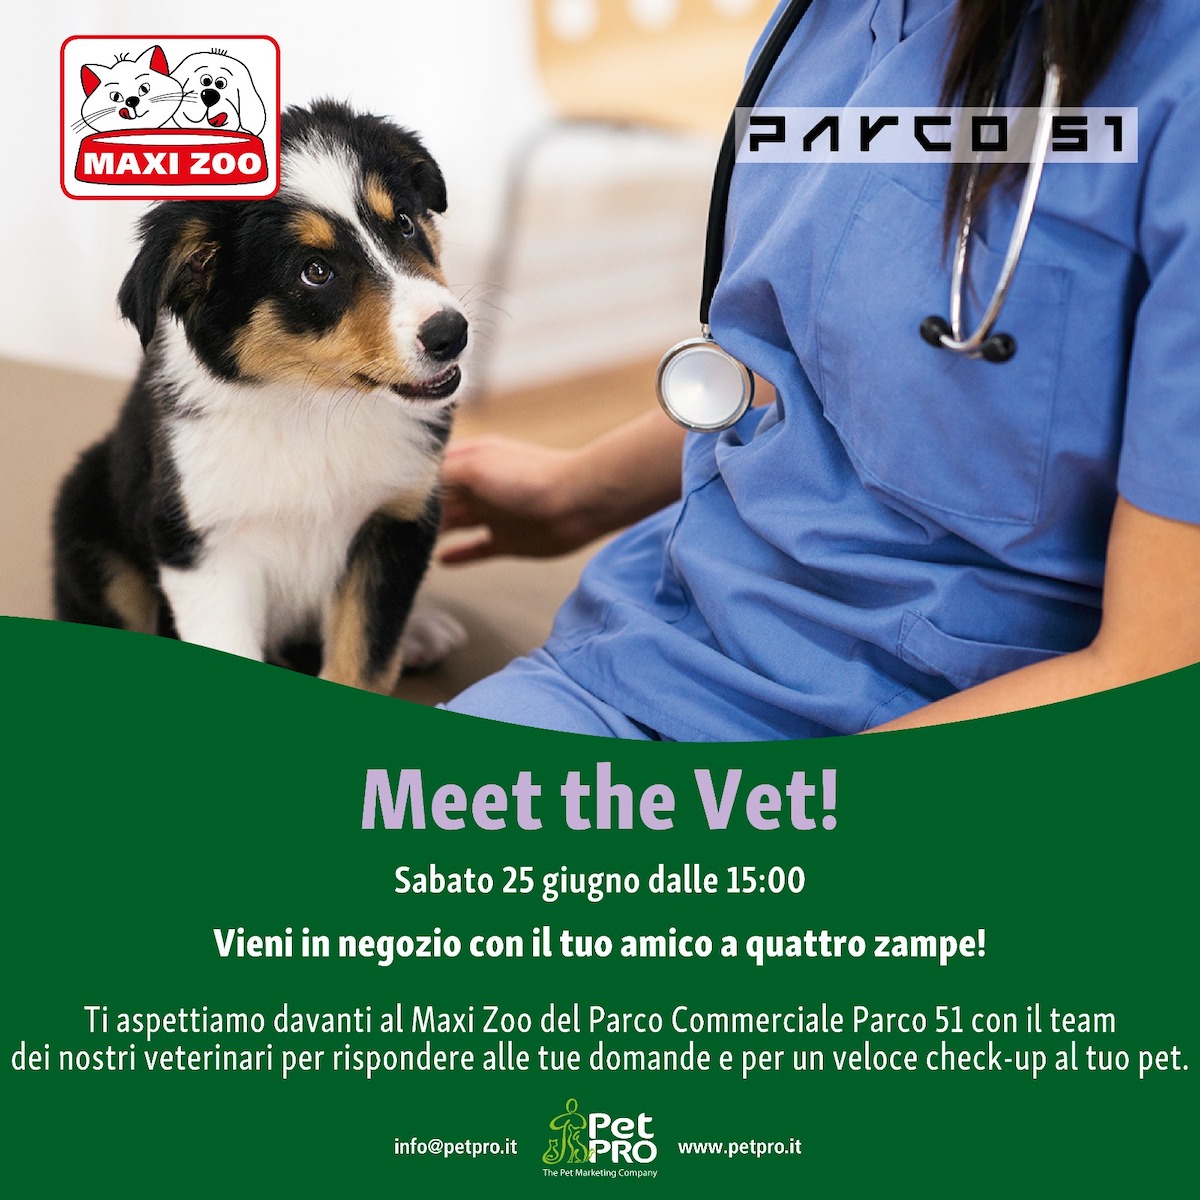 Meet the vet!